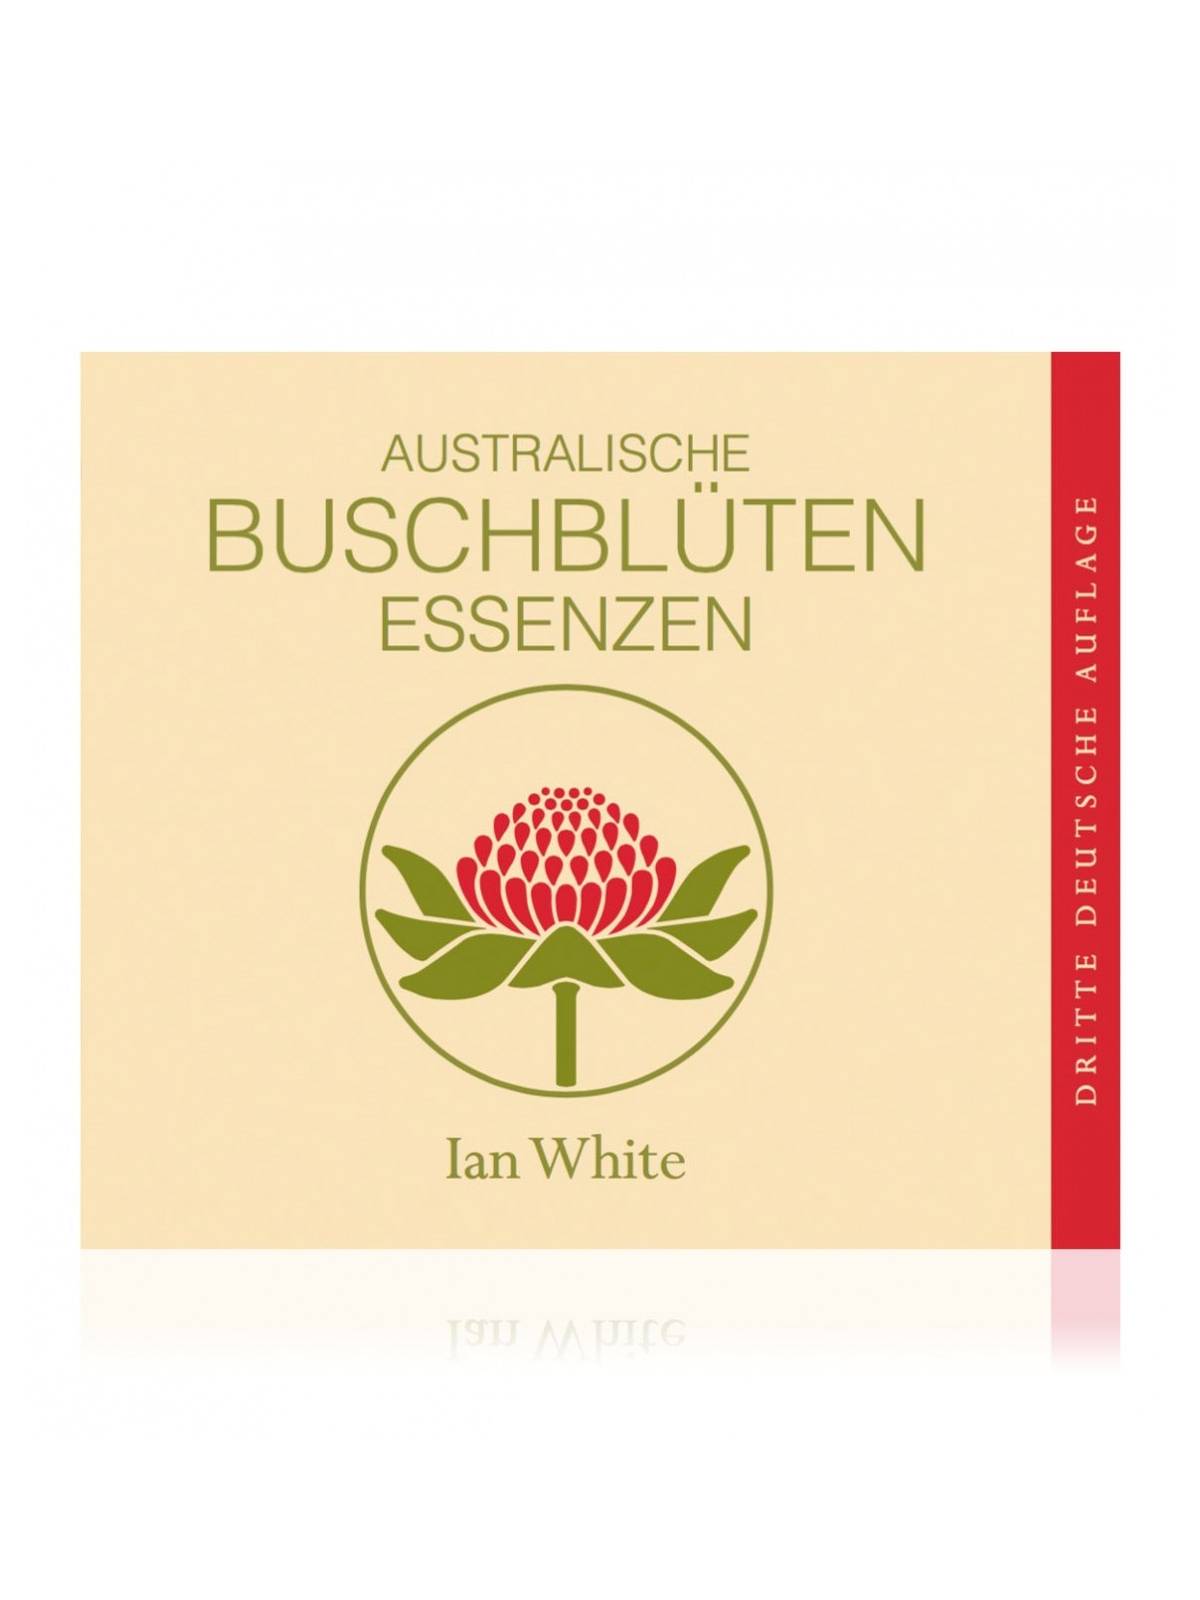 Taschenbuch Australische Buschblüten Essenzen von Ian White der Australian Bush Flower Essences